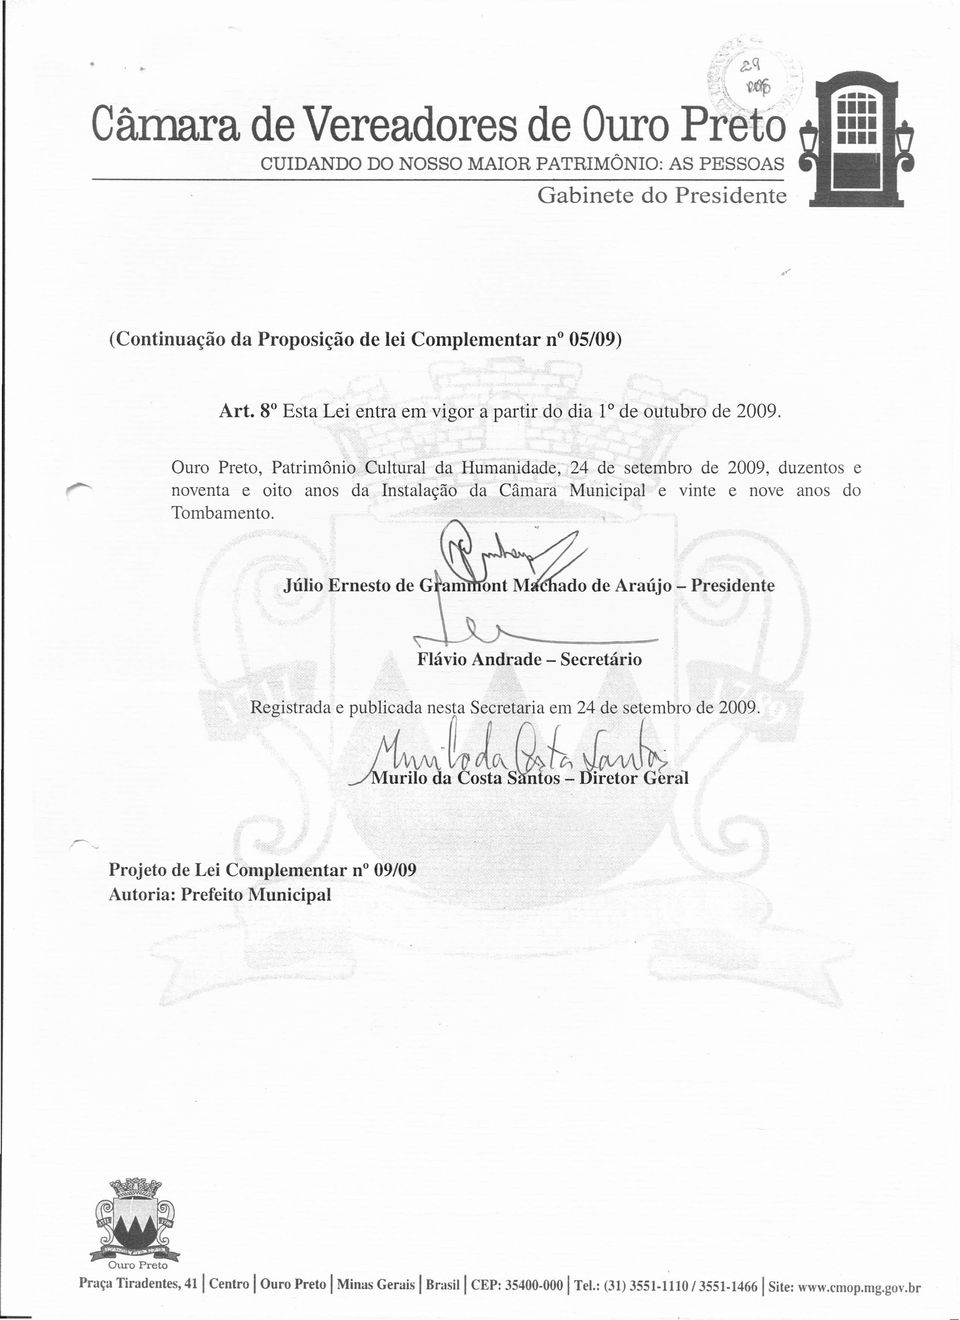 ado de Araújo - Presidente Flávio Andrade - Secretário Registradae PUbr;t. nes~7~7s& 24;e set bro de 2009.